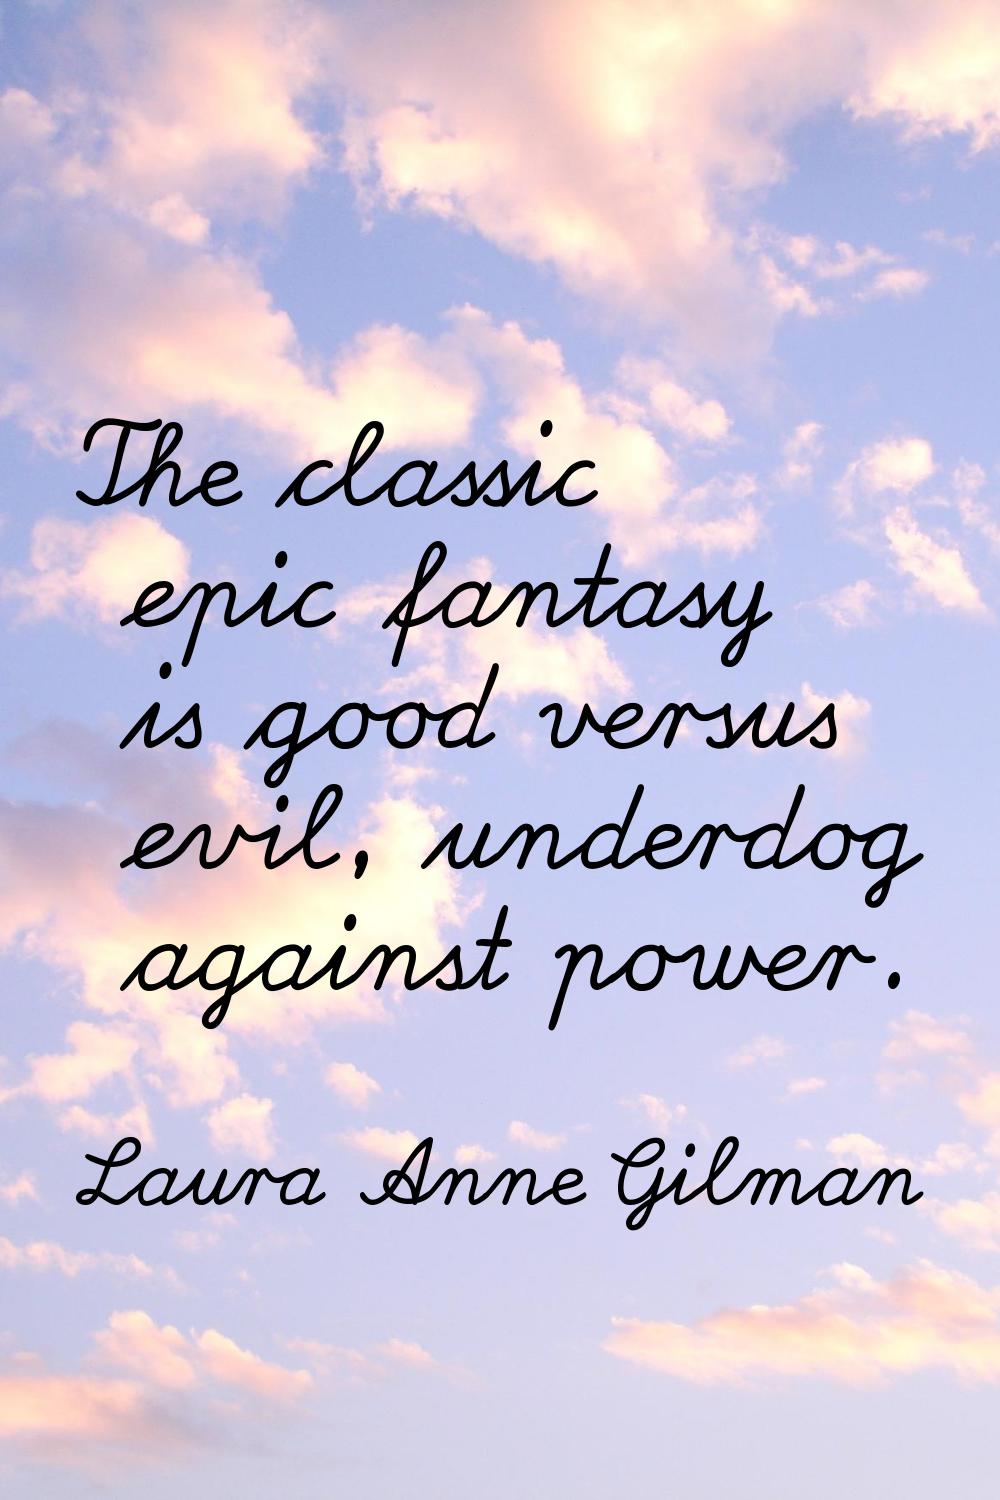 The classic epic fantasy is good versus evil, underdog against power.